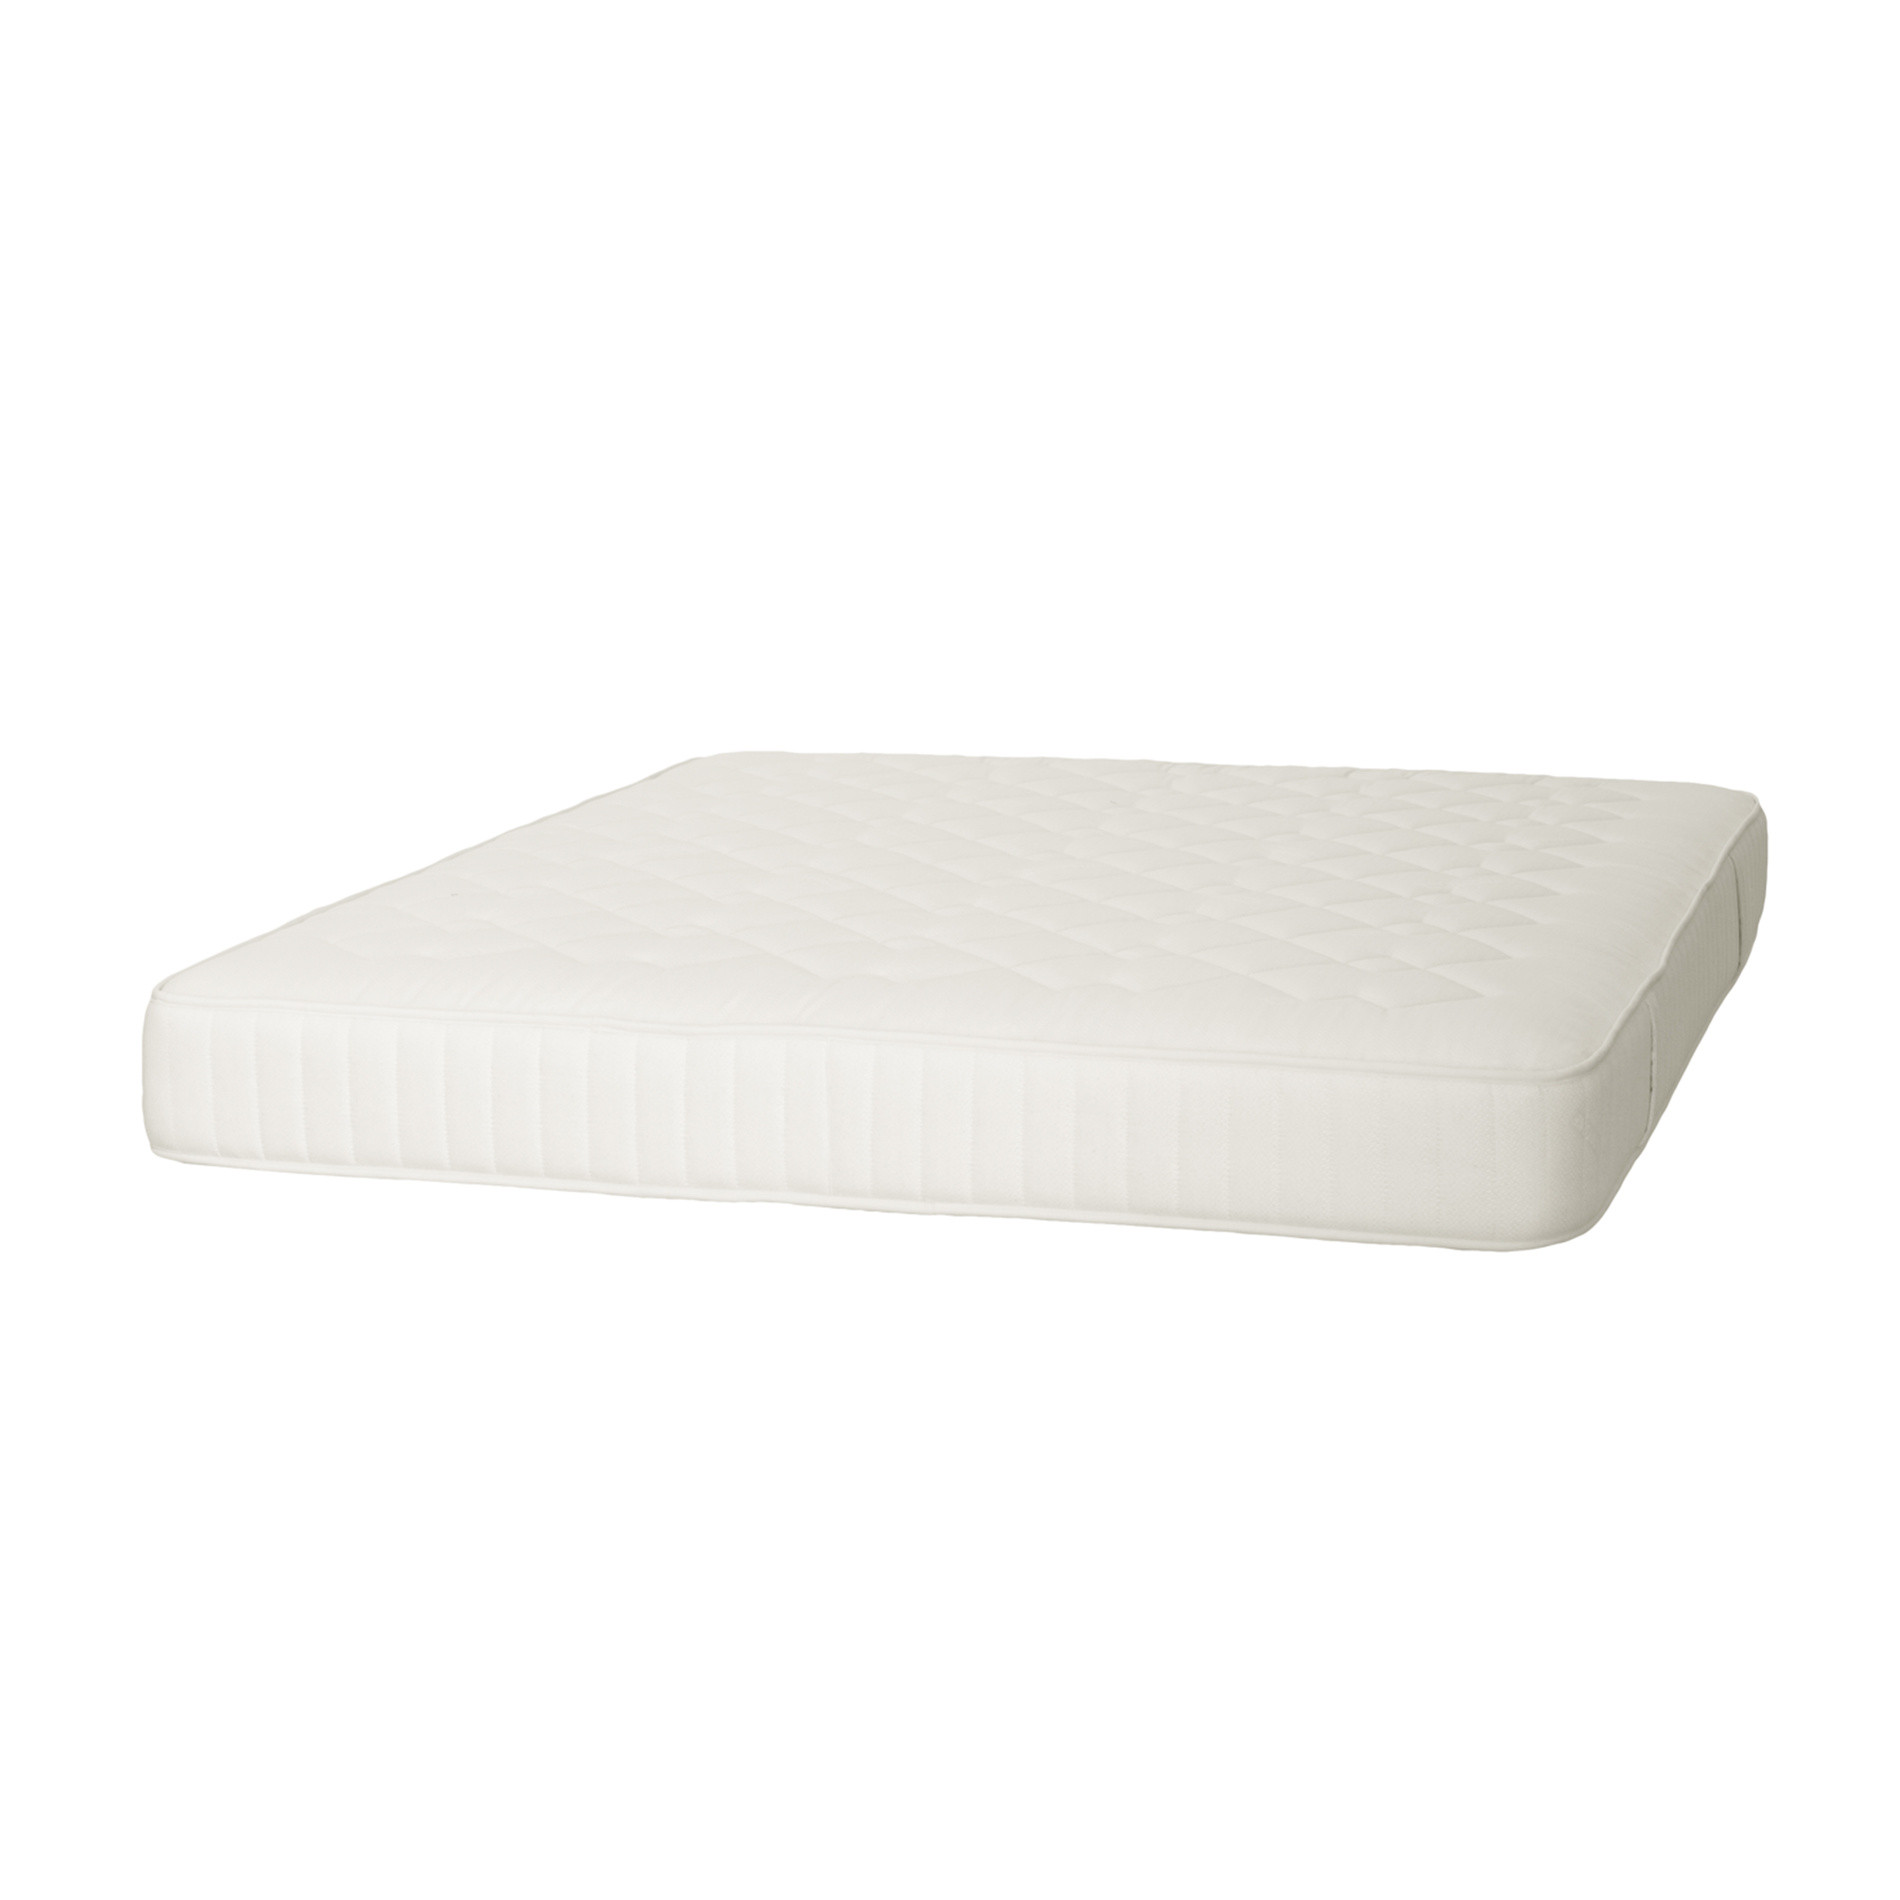 Sprung mattress, White, large image number 0